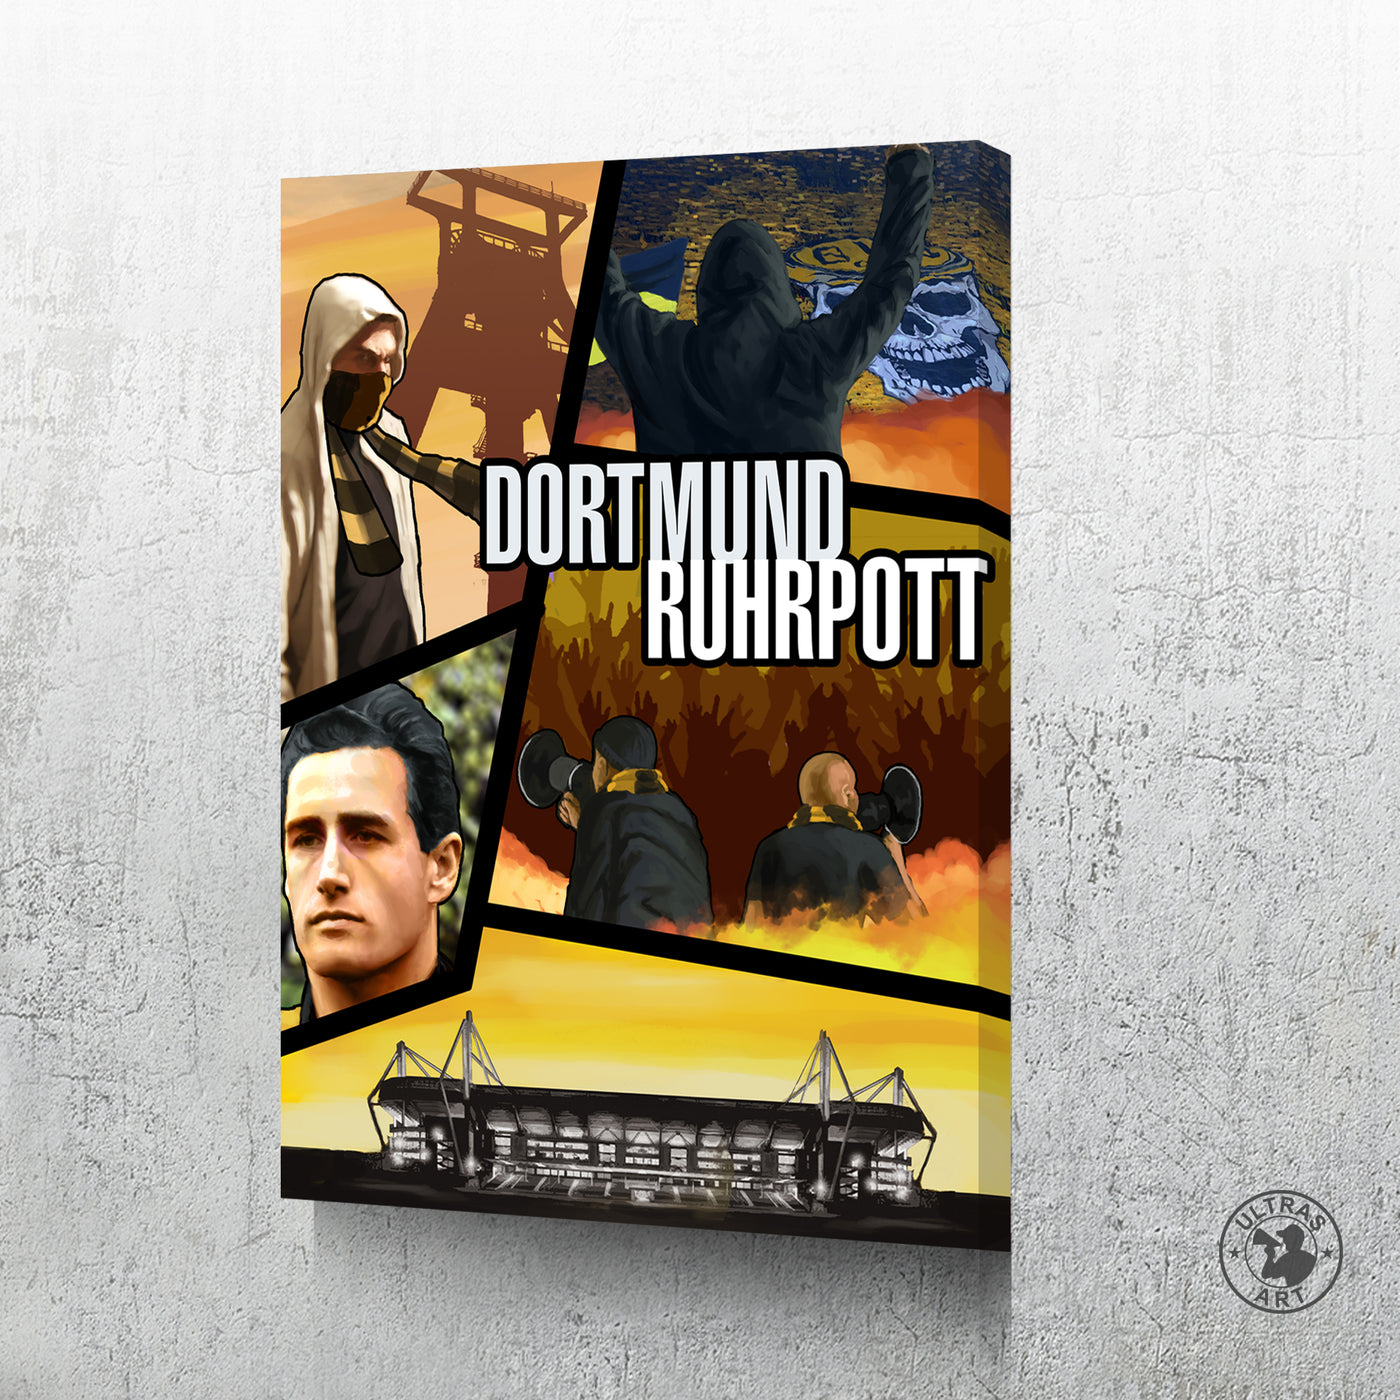 Dortmund Collage "Ruhrpott"